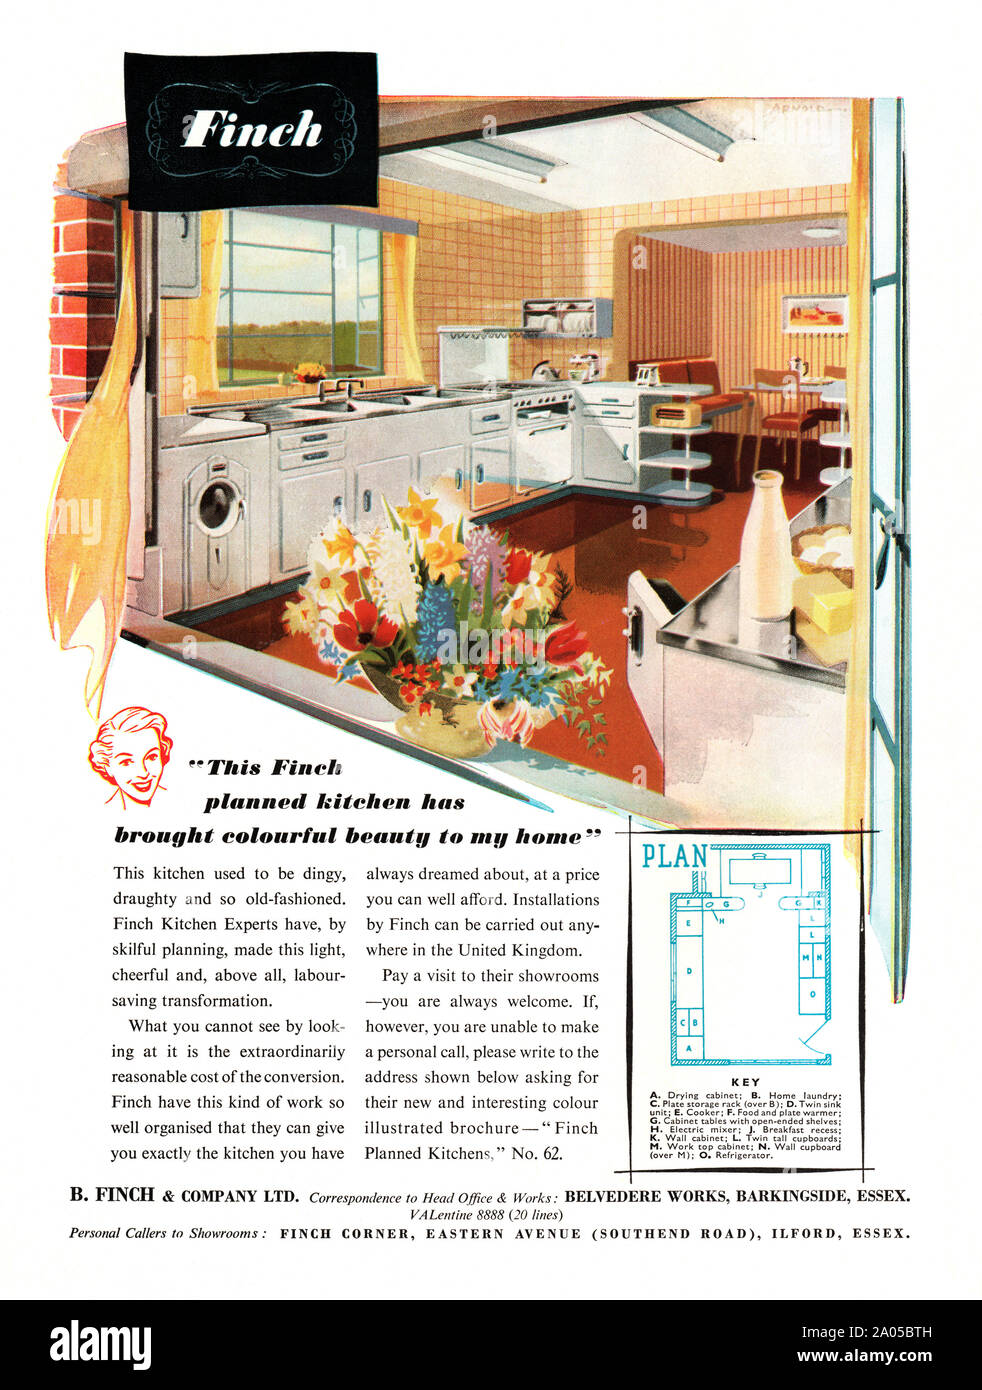 Anzeige für ein Finch Einbauküche, 1951. Das bunte Bild zeigt einen Blick auf die modern wirkende Küche Umbau und einen Plan, der es unten. In den frühen 1950er Jahren Einbauküchen in Orten wie in den USA üblich waren, aber relativ selten in Großbritannien. Stockfoto